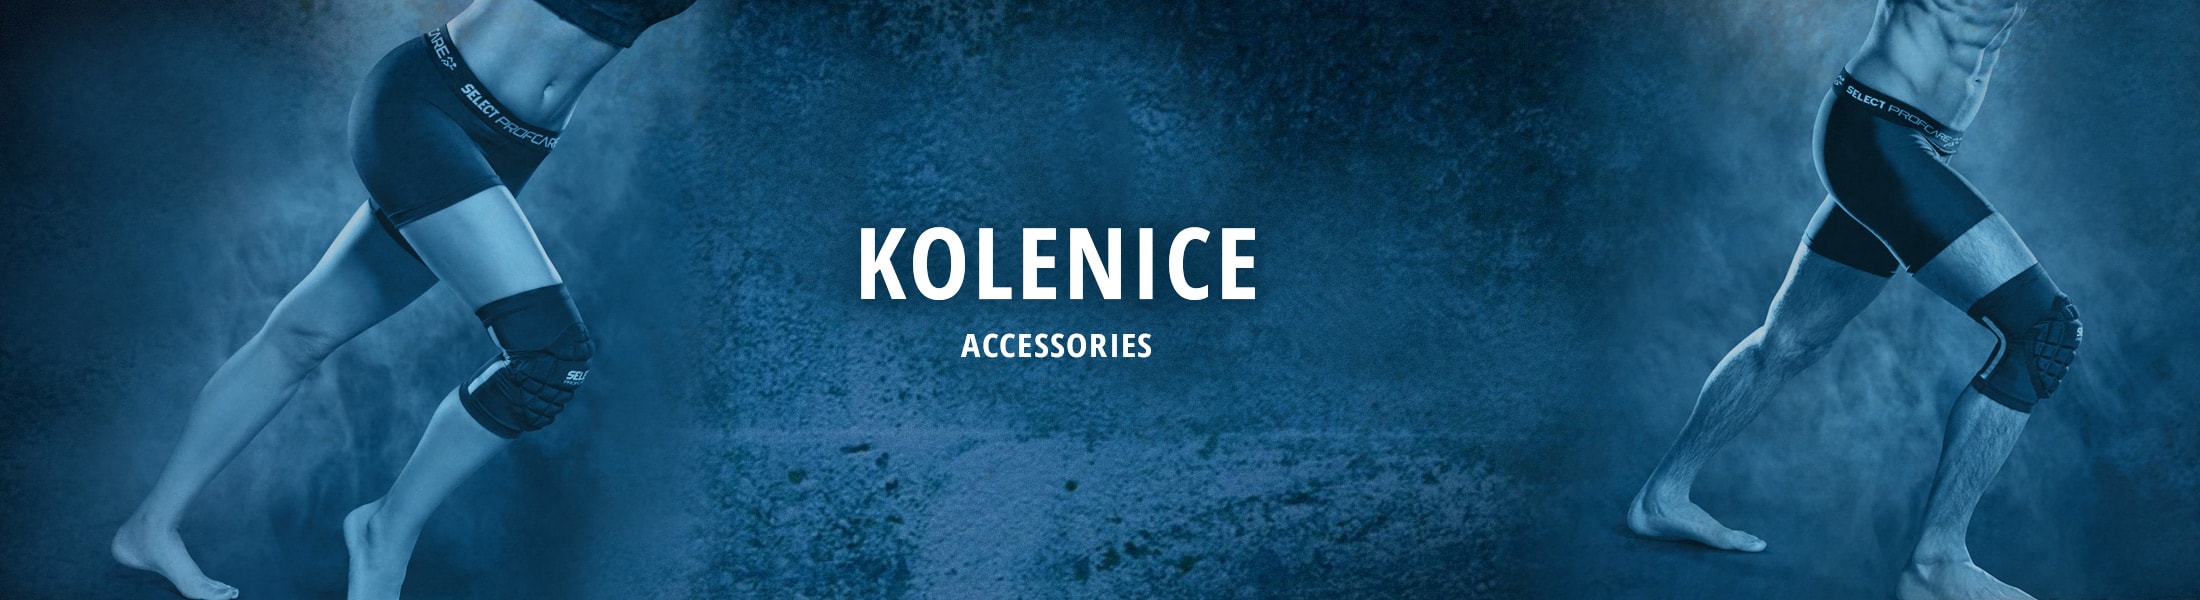 Accessories - Kolenice